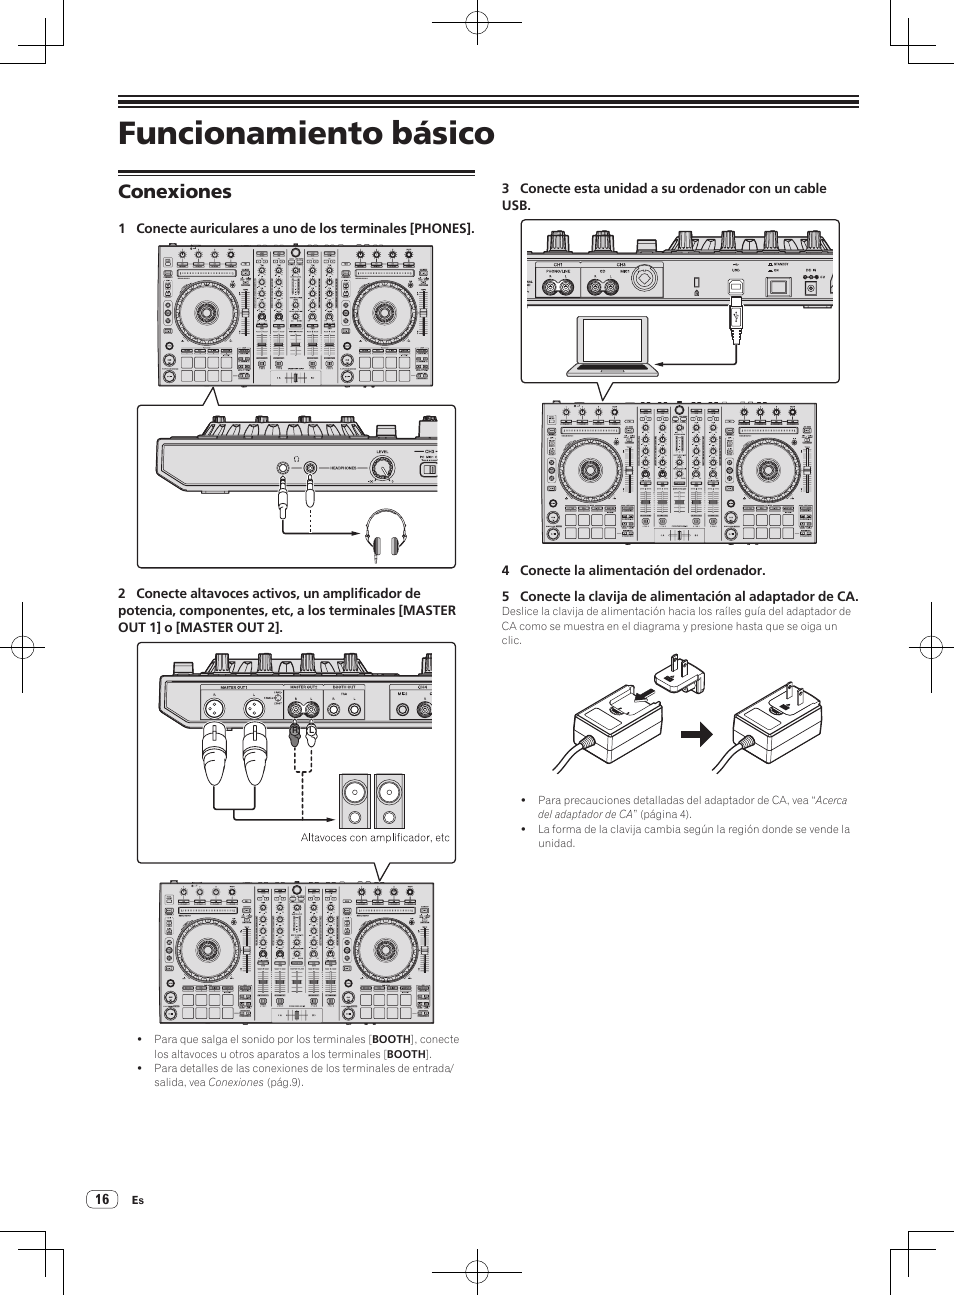 Funcionamiento básico, Conexiones | Pioneer DDJ-SX Manual del usuario | Página 16 / 33